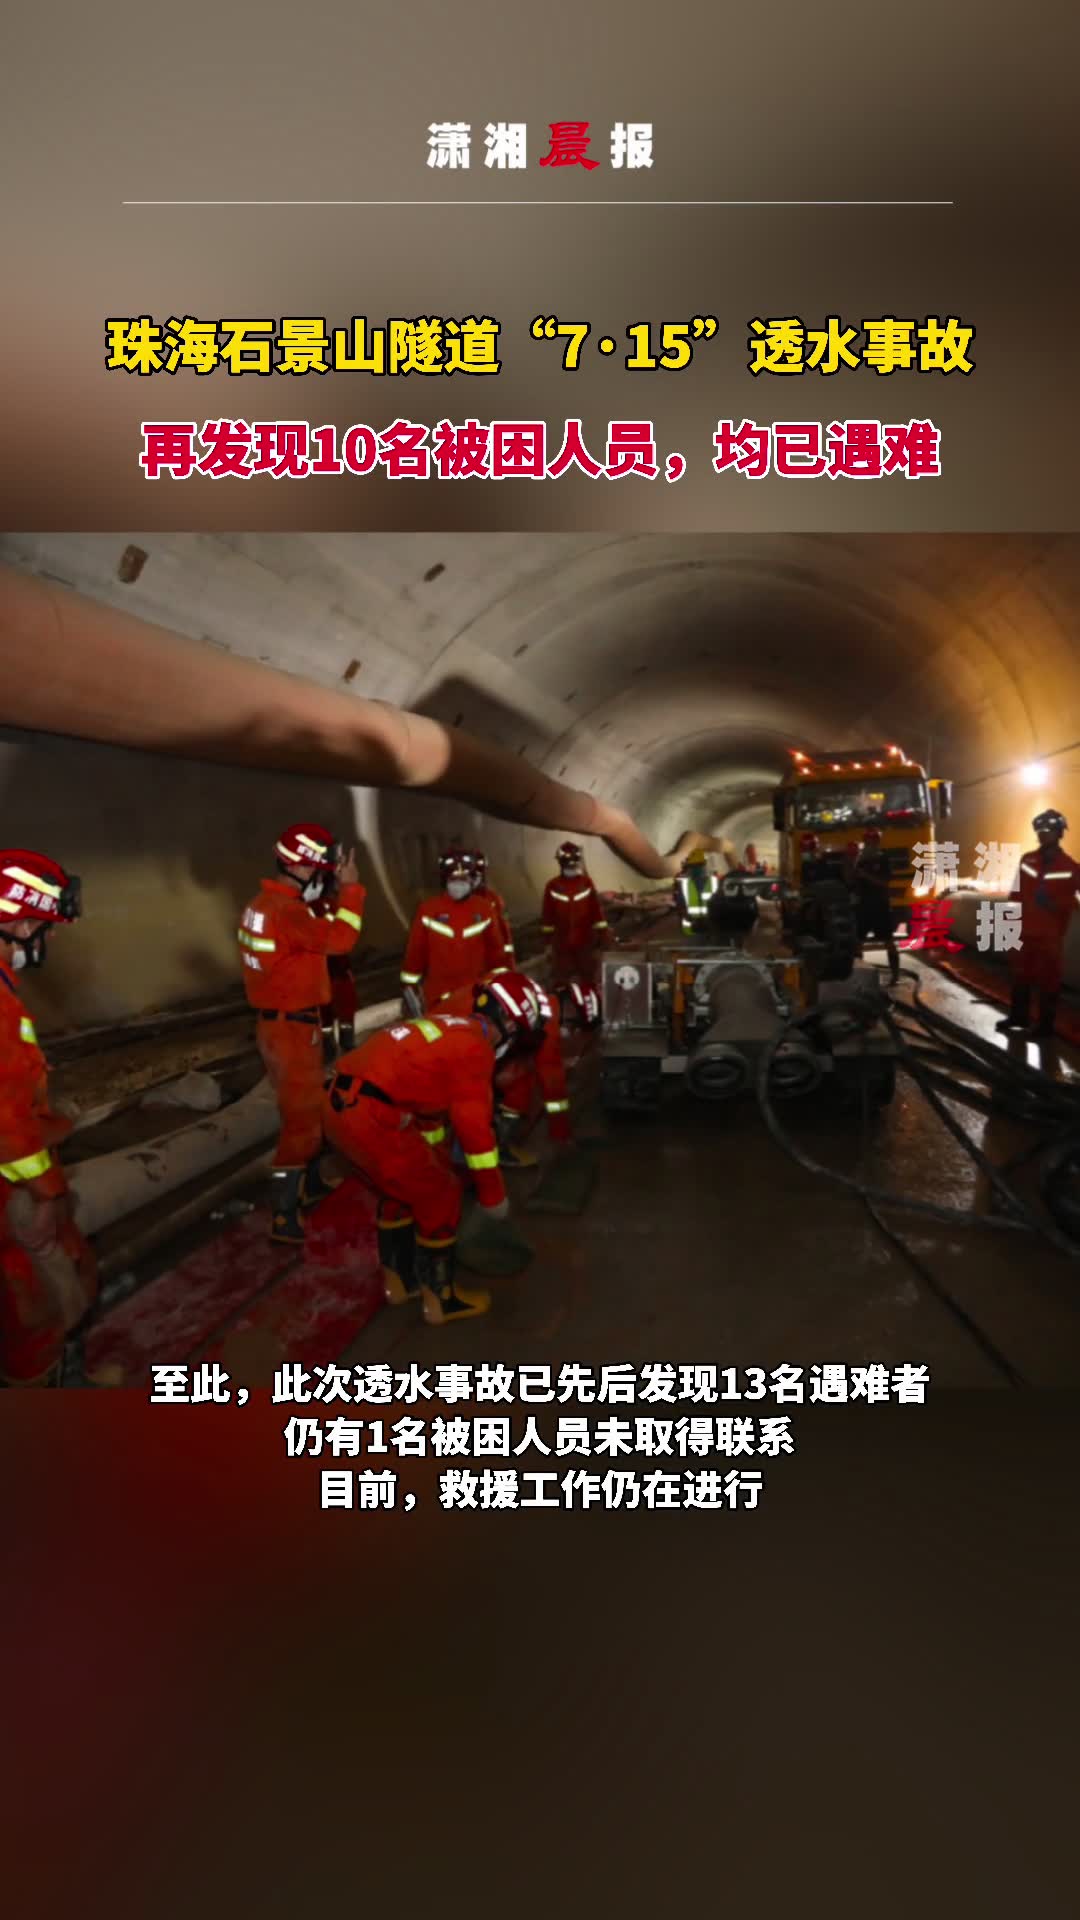 珠海石景山隧道715透水事故再发现10名被困人员均已遇难